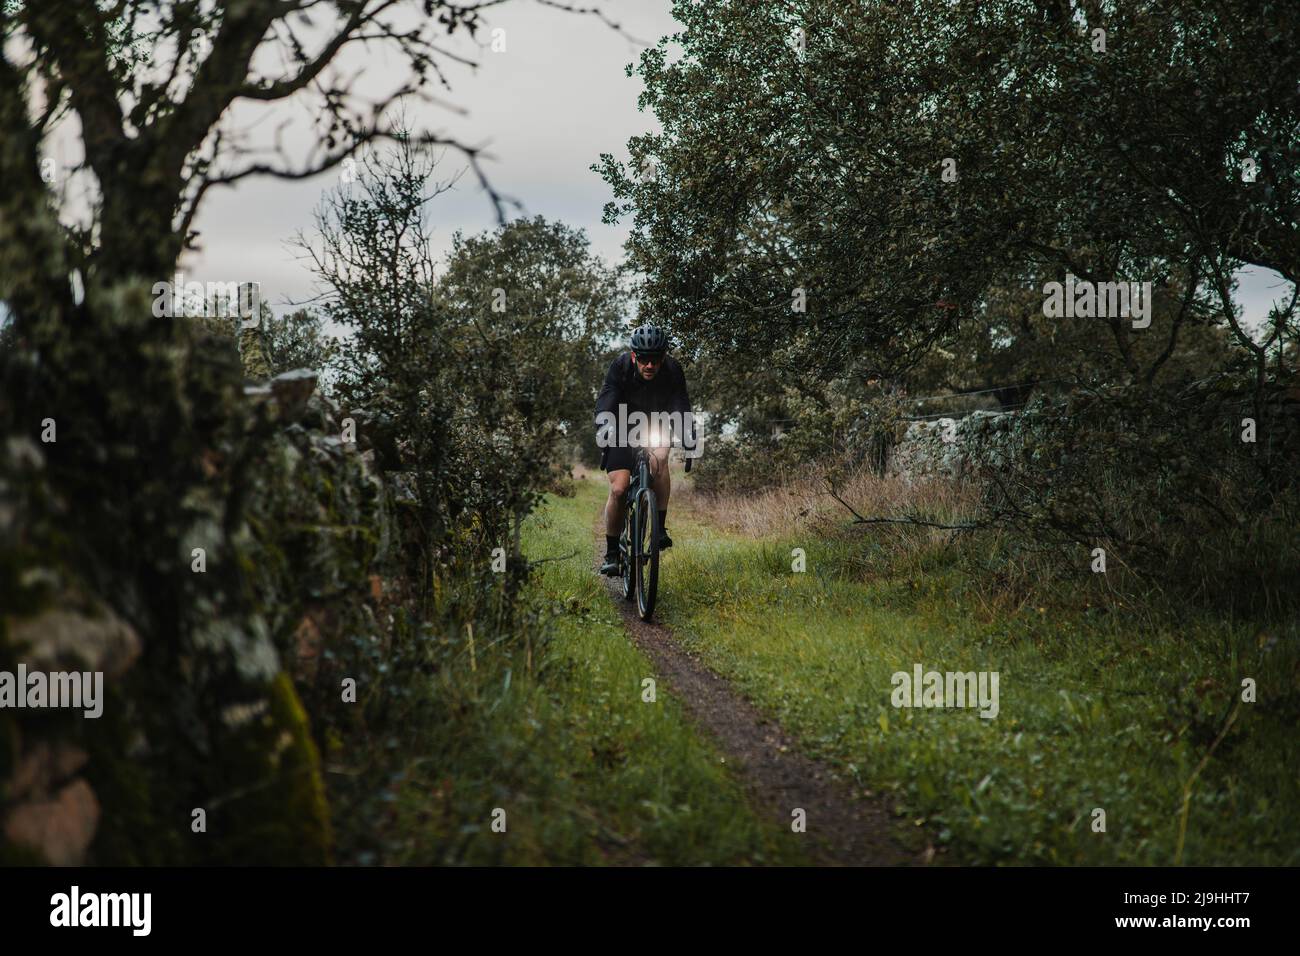 Ciclista montando en bicicleta entre plantas Foto de stock